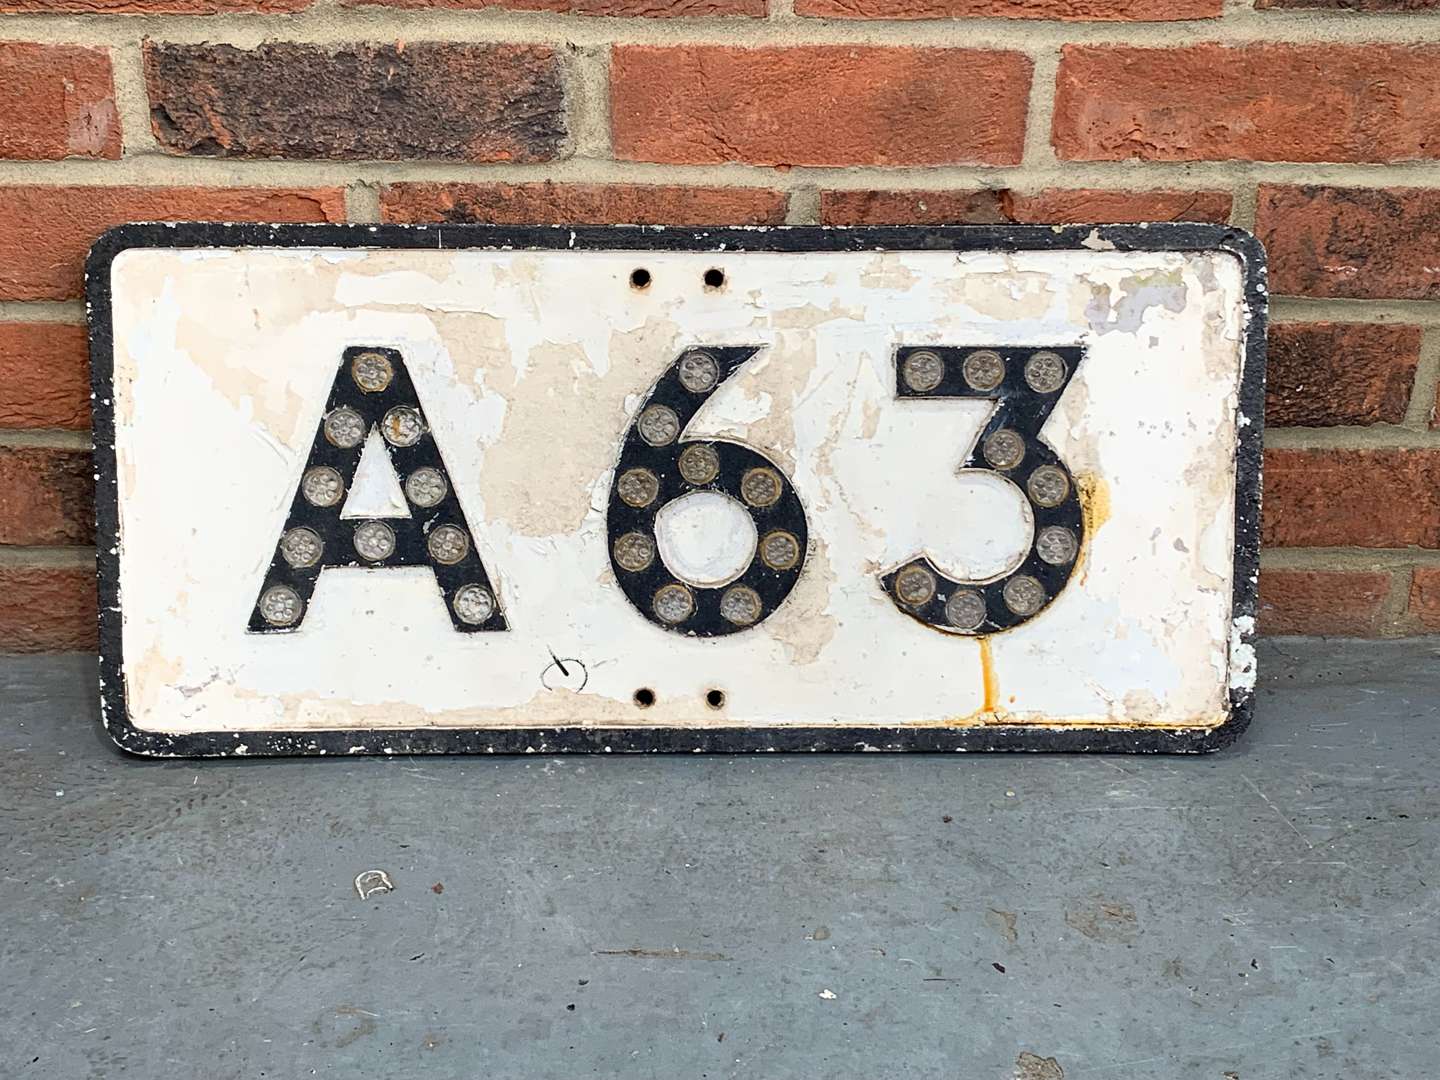 <p>A63 Cast Aluminium Road Sign With Reflectors&nbsp;</p>